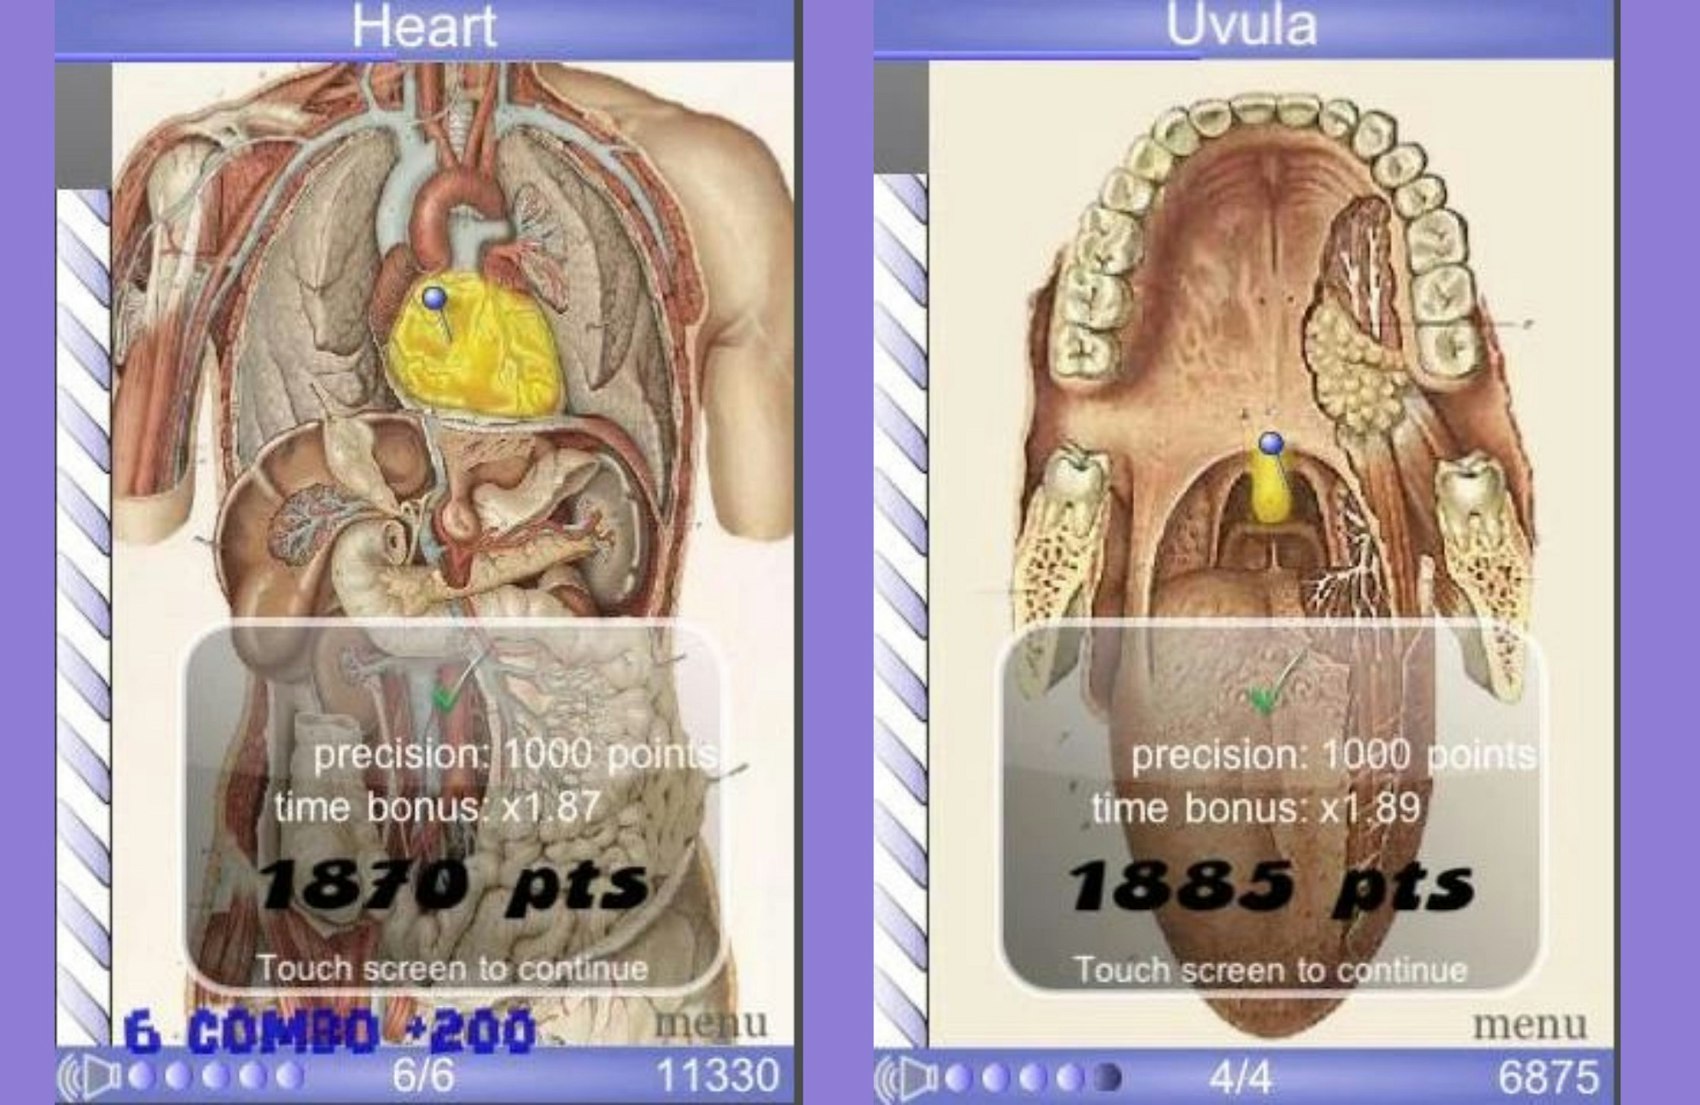 Die App Speed Anatomy zeigt Bilder der menschlichen Anatomie